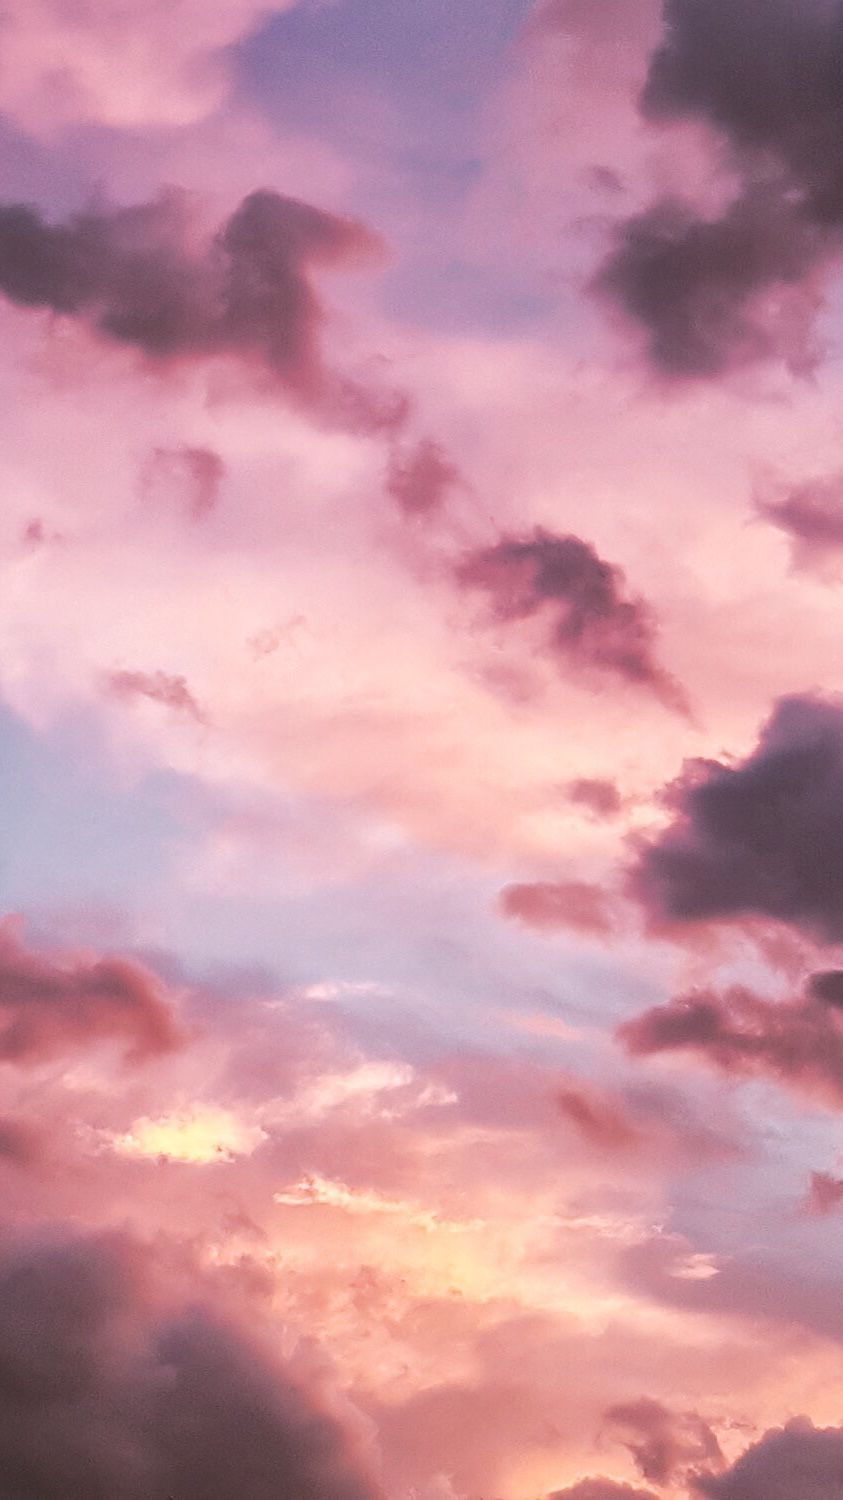 sunset aesthetic wallpaper. Sky aesthetic, Aesthetic